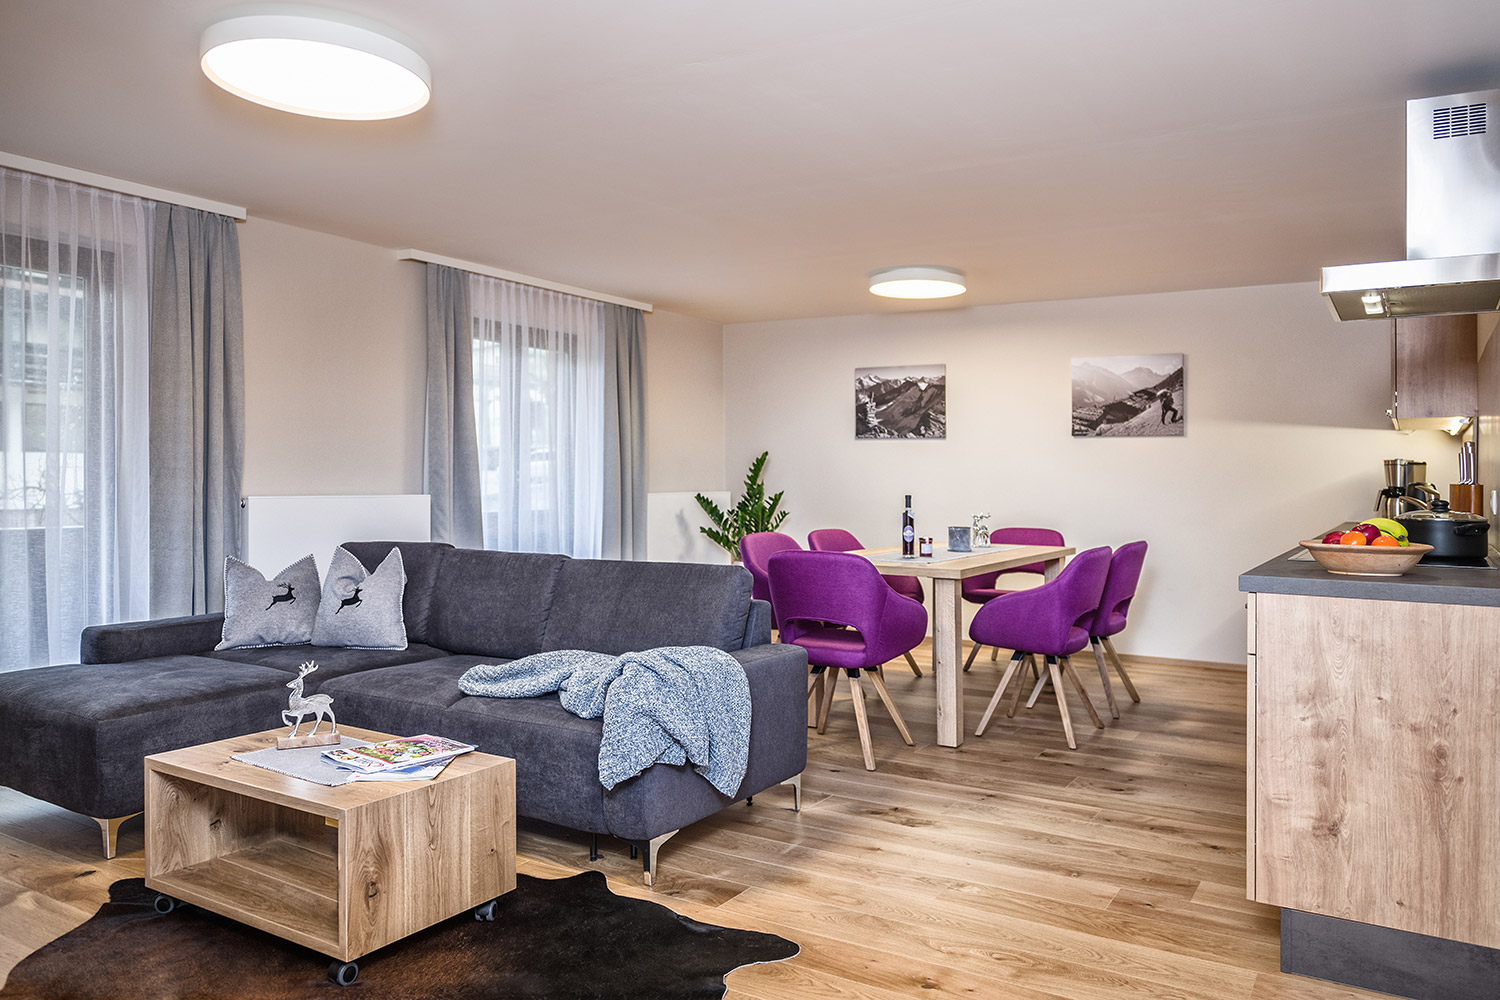 Apartment Reinhart Holidays in Fügen, Zillertal: Gemütlicher Flair im Wohn-Esszimmer